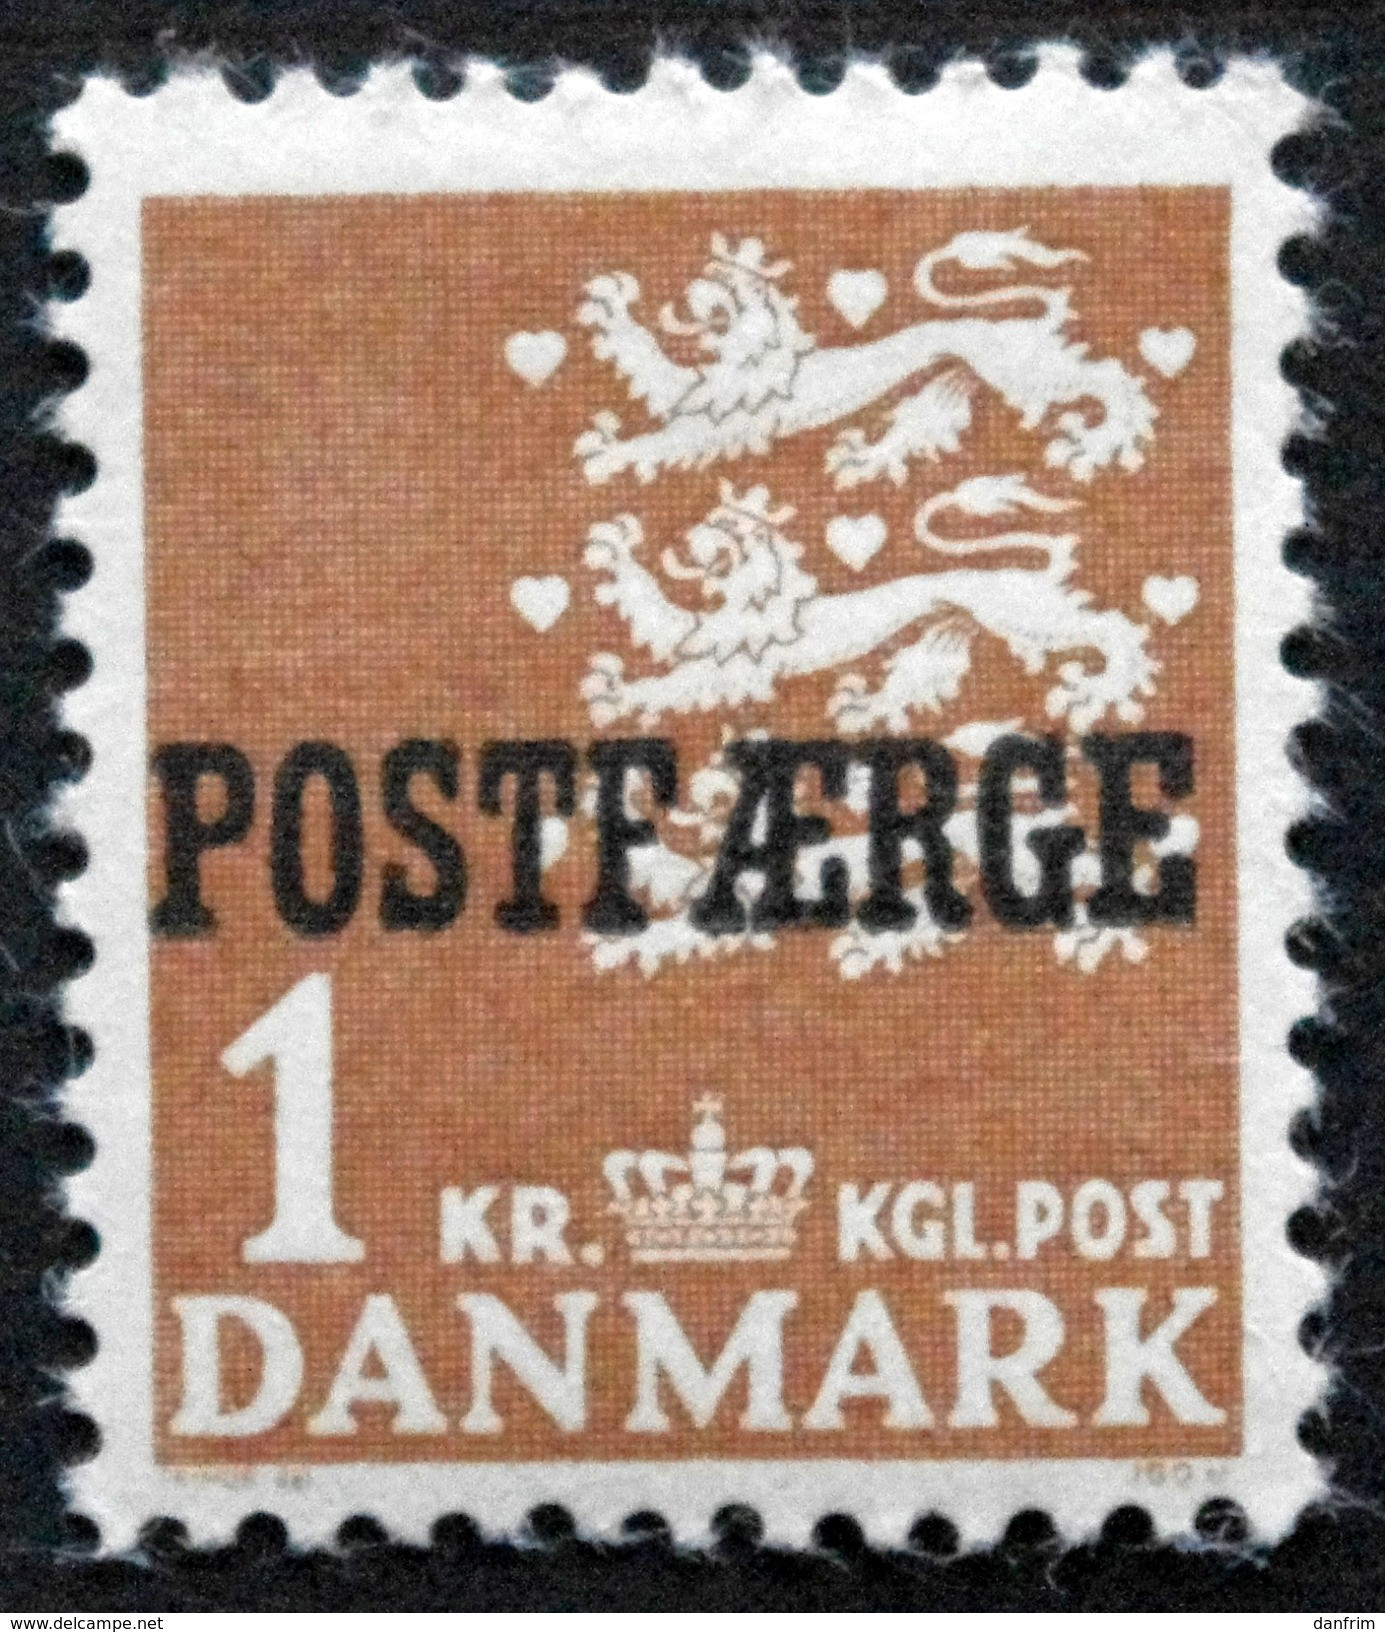 Denmark 1950  Parcel Post (POSTFÆRGE).   Minr.50 Type I  MNH  (** )  ( Lot  G 1255 ) - Parcel Post